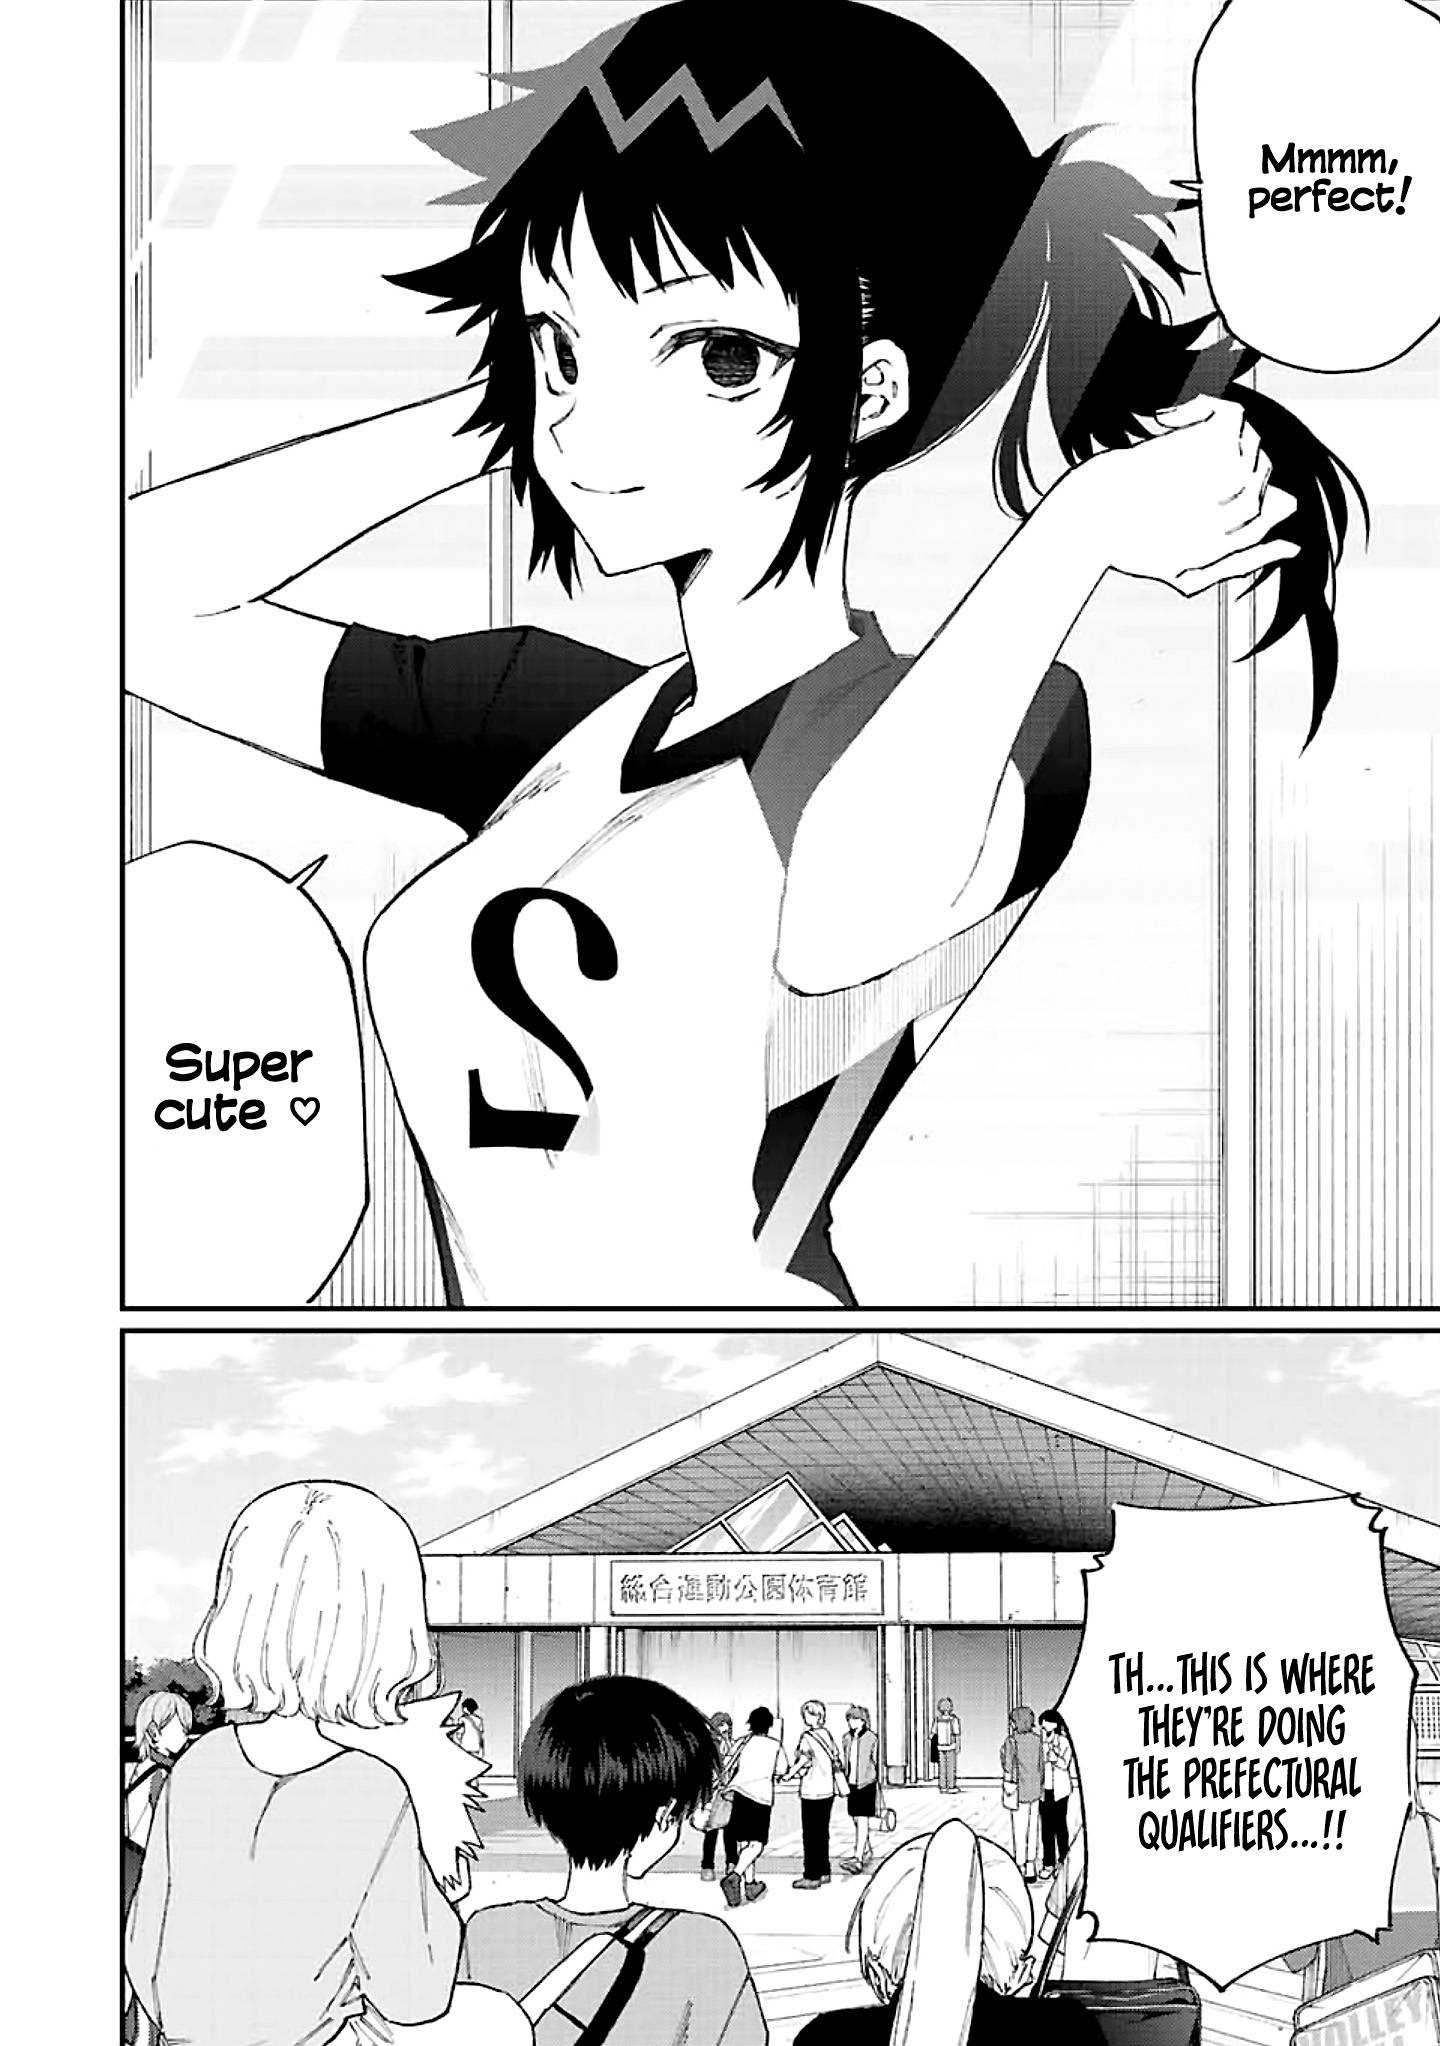 Shikimori's Not Just A Cutie - chapter 149 - #3